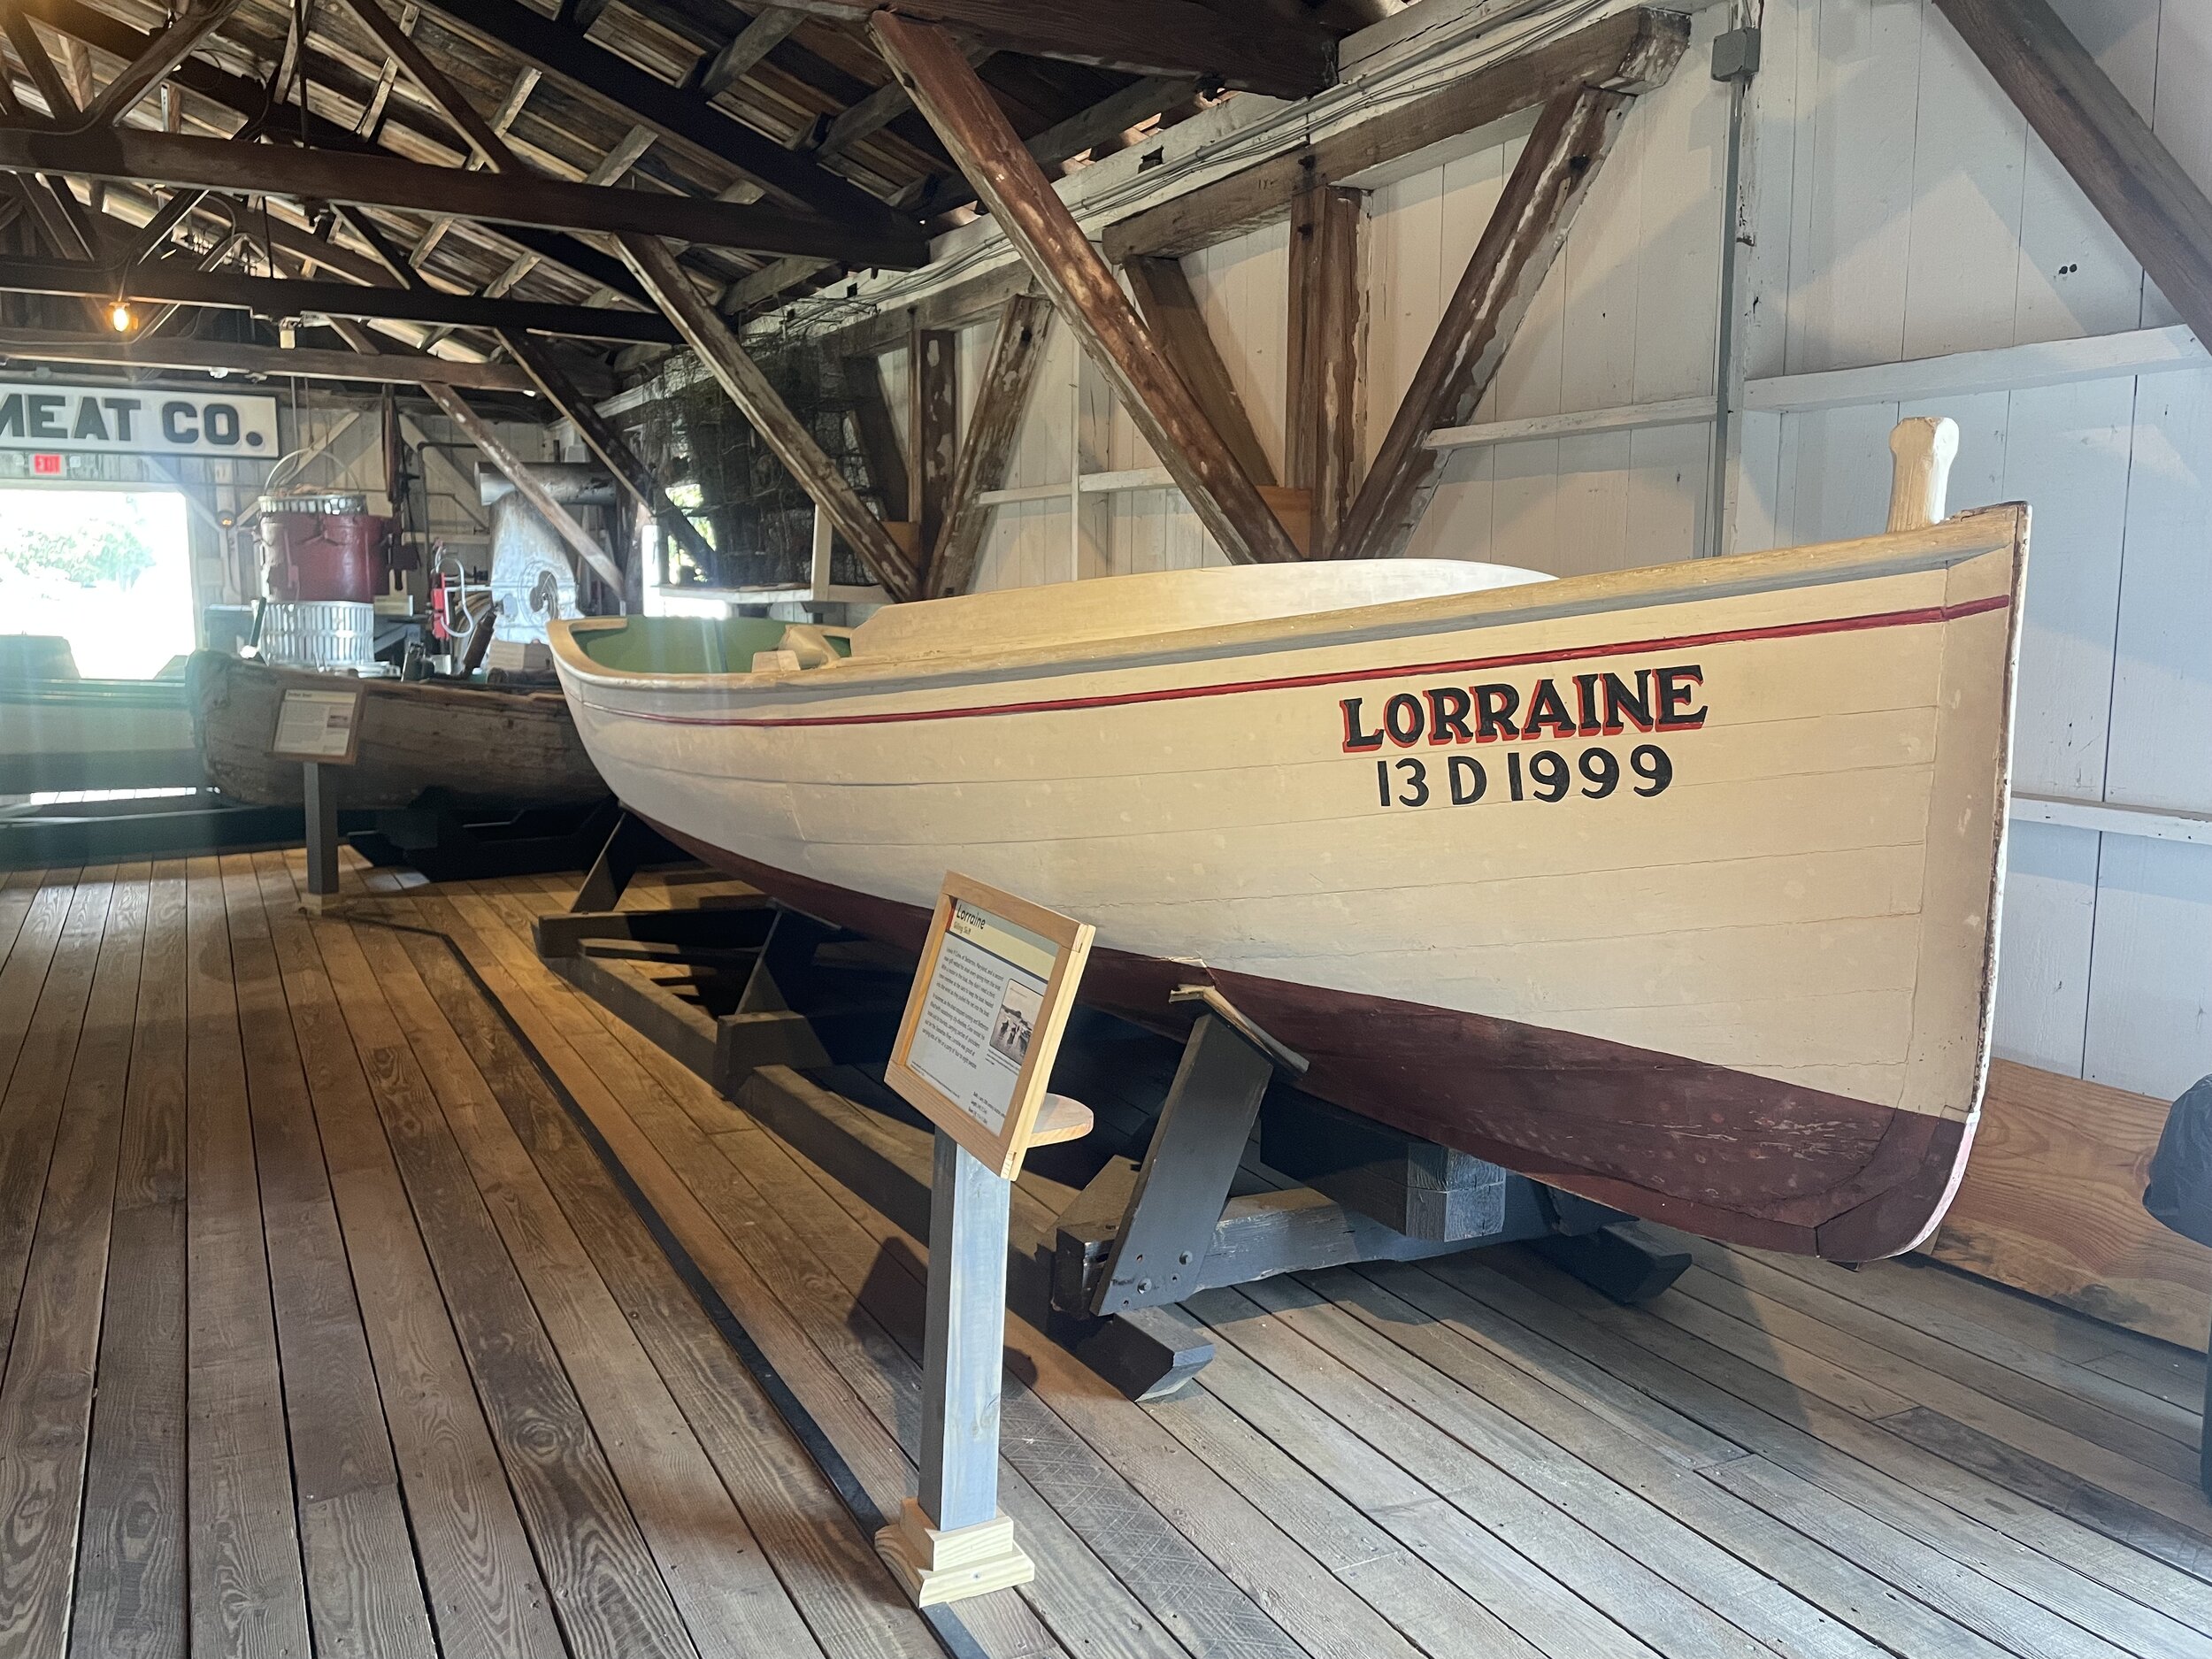 Chesapeake Bay Maritime Museum